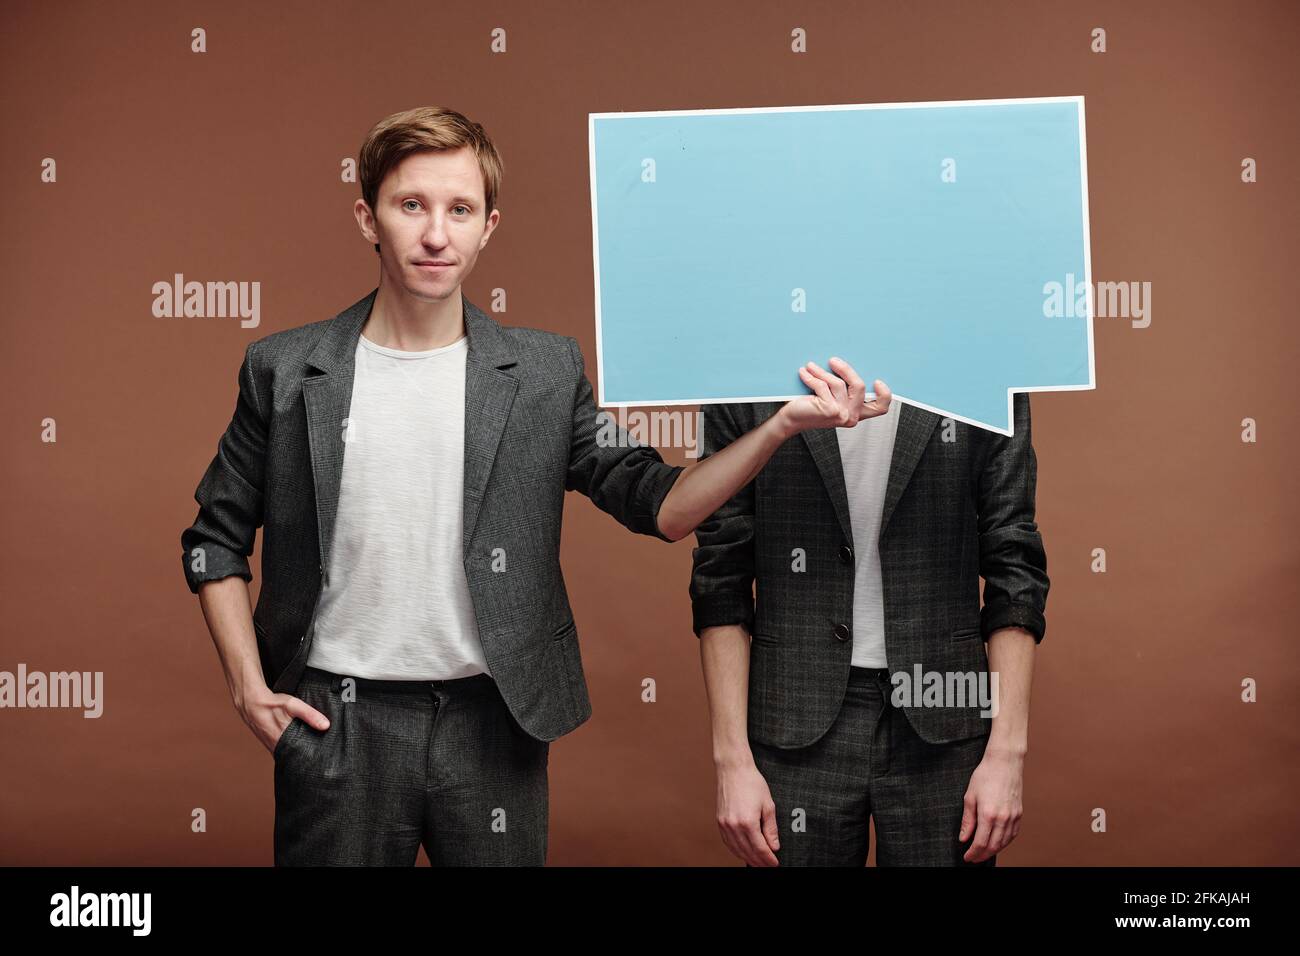 Porträt des Inhalts junger Mann in smart casual Anzug versteckt Gesicht des Mannes hinter Sprechblase Tag vor braunem Hintergrund Stockfoto